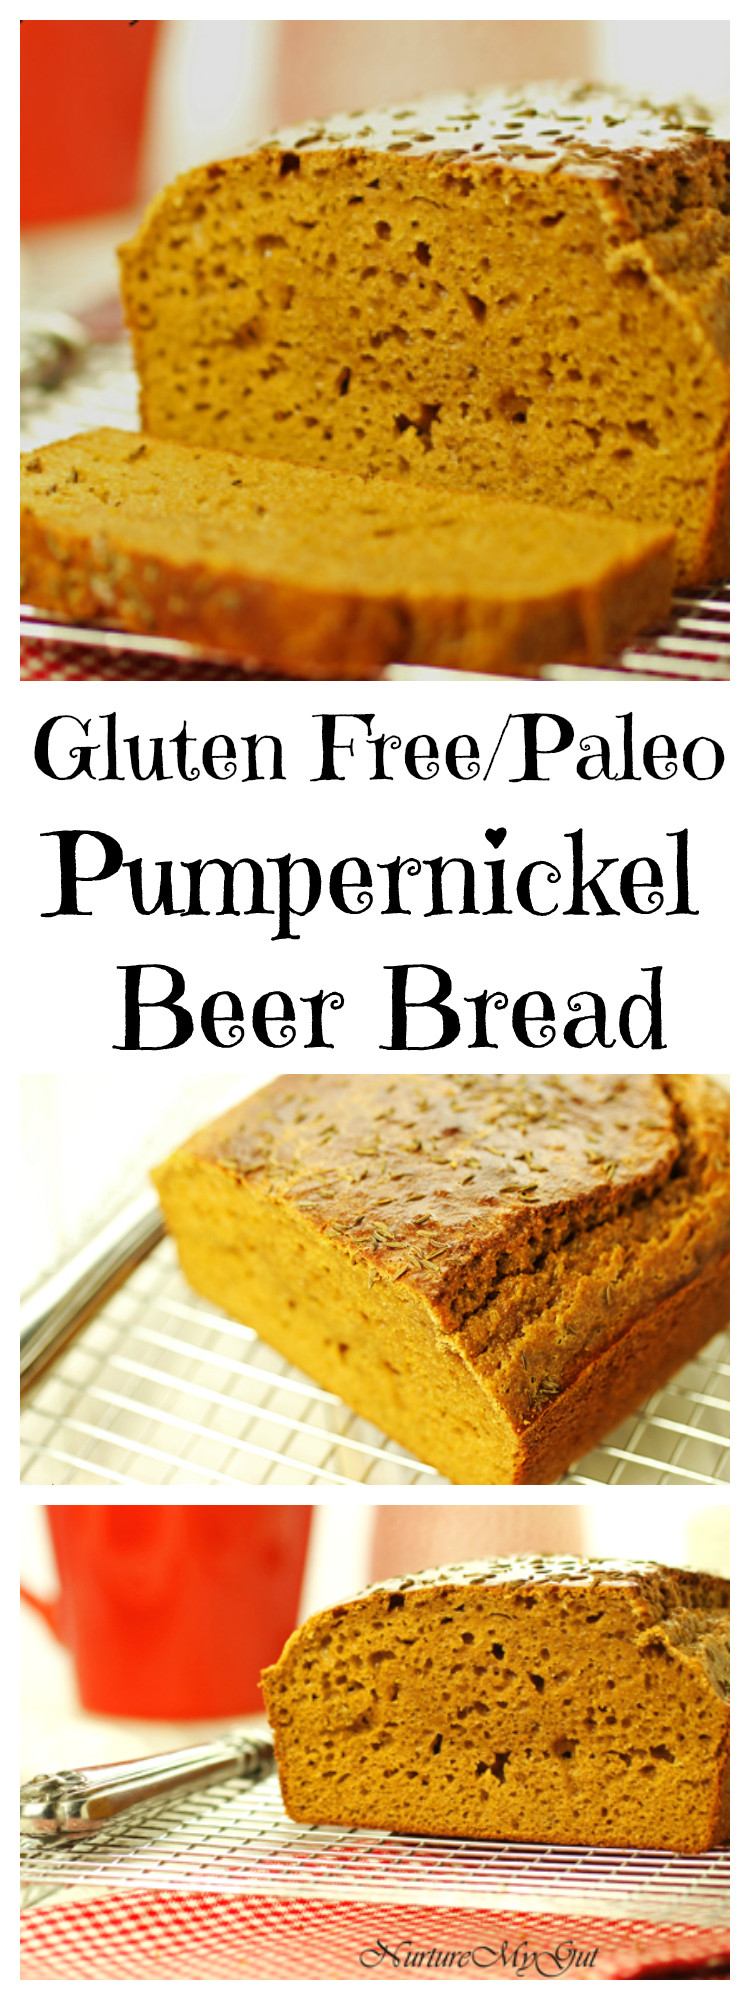 Is Gluten Free Bread Paleo
 Gluten Free Pumpernickel Beer Bread Grain Free Dairy Free